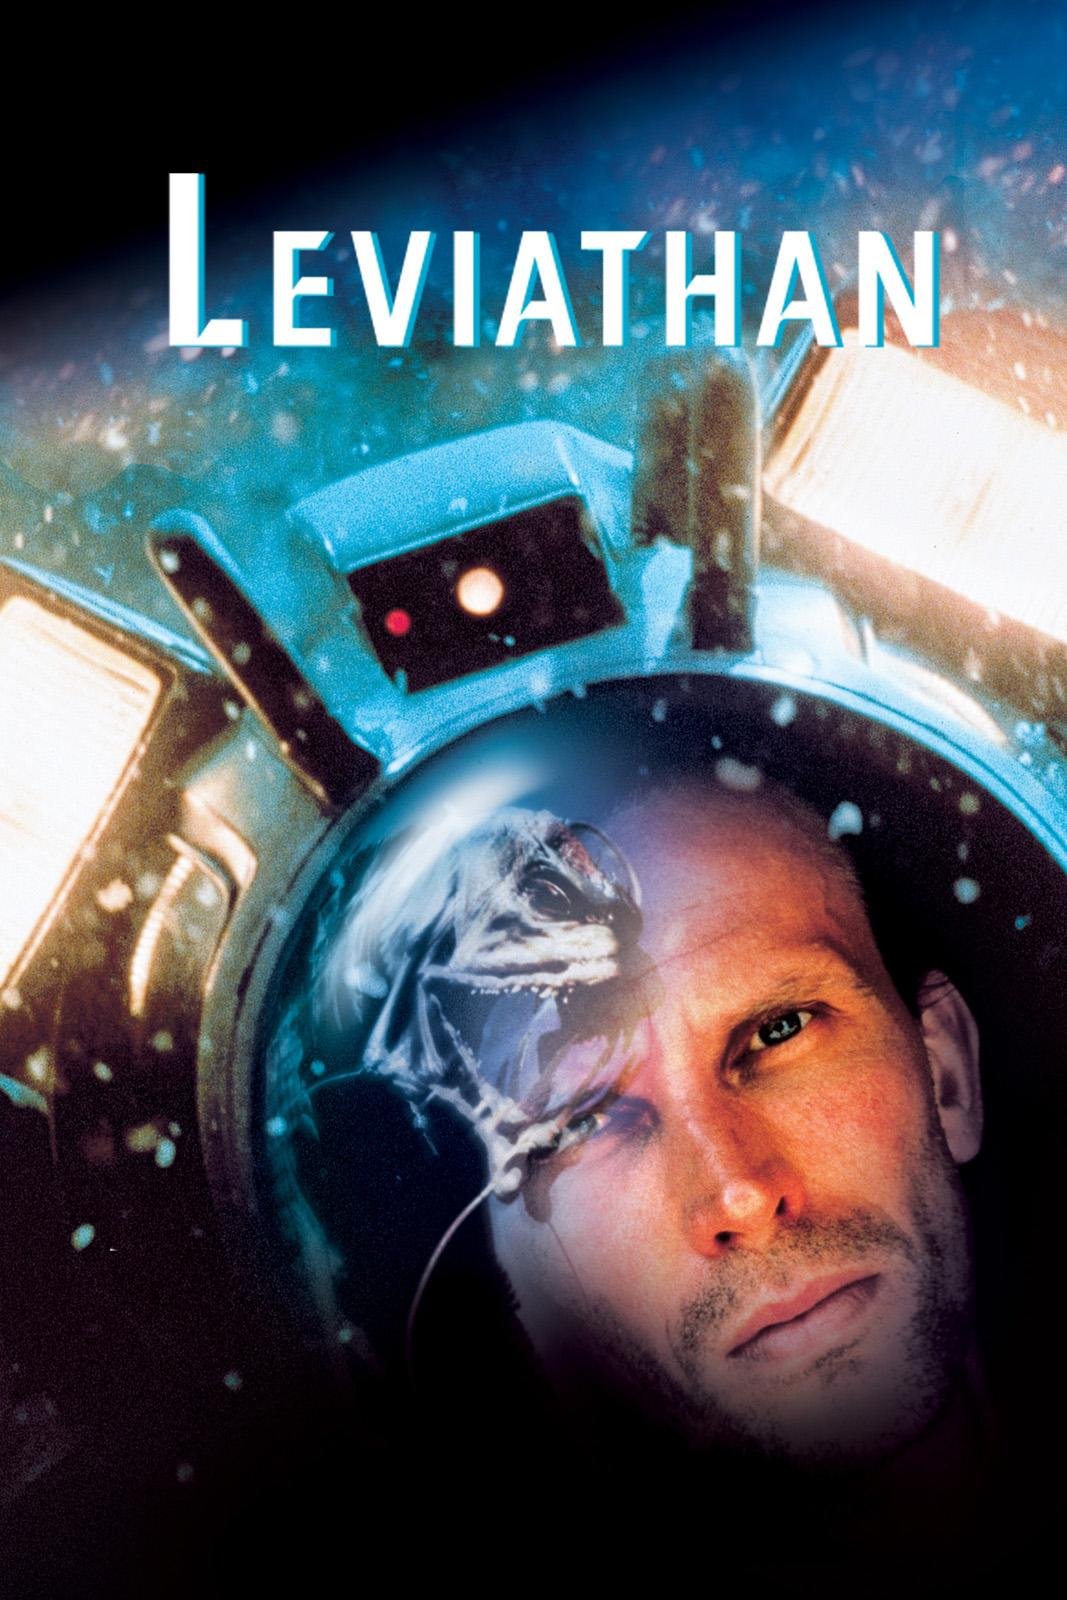 Leviathan (1989) starring Peter Weller, Ernie Hudson, Hector Elizondo, Richard Crenna